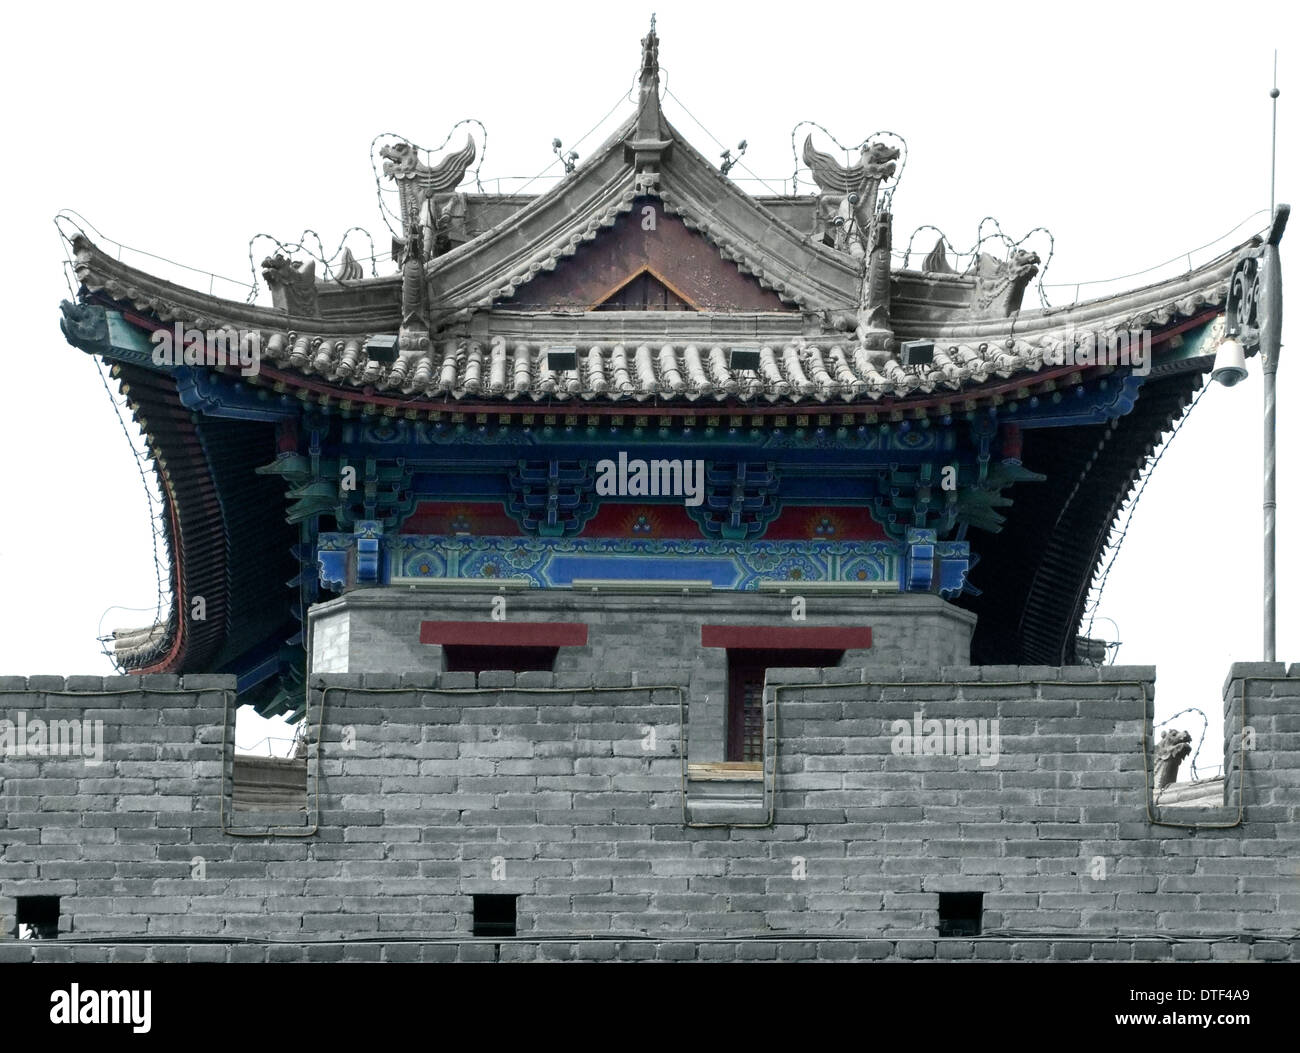 Aprovechando la muralla de la ciudad de Xian (China) Foto de stock